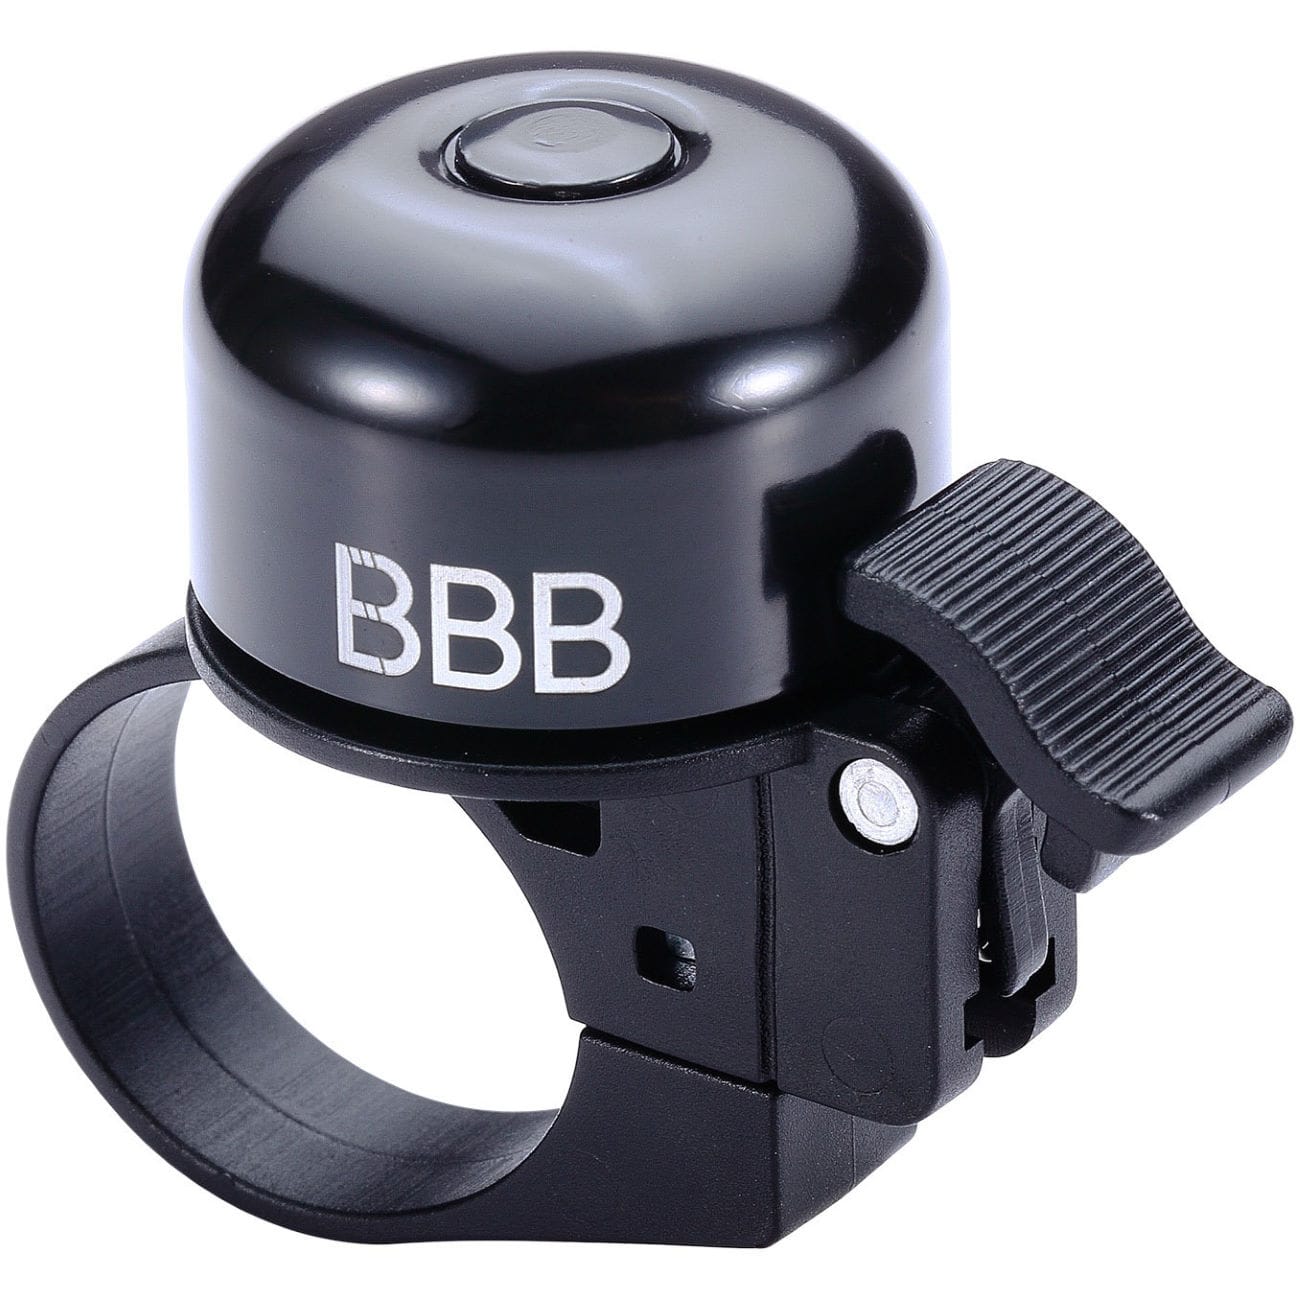 BBB BBB-11 LOUD & CLEAR BELL